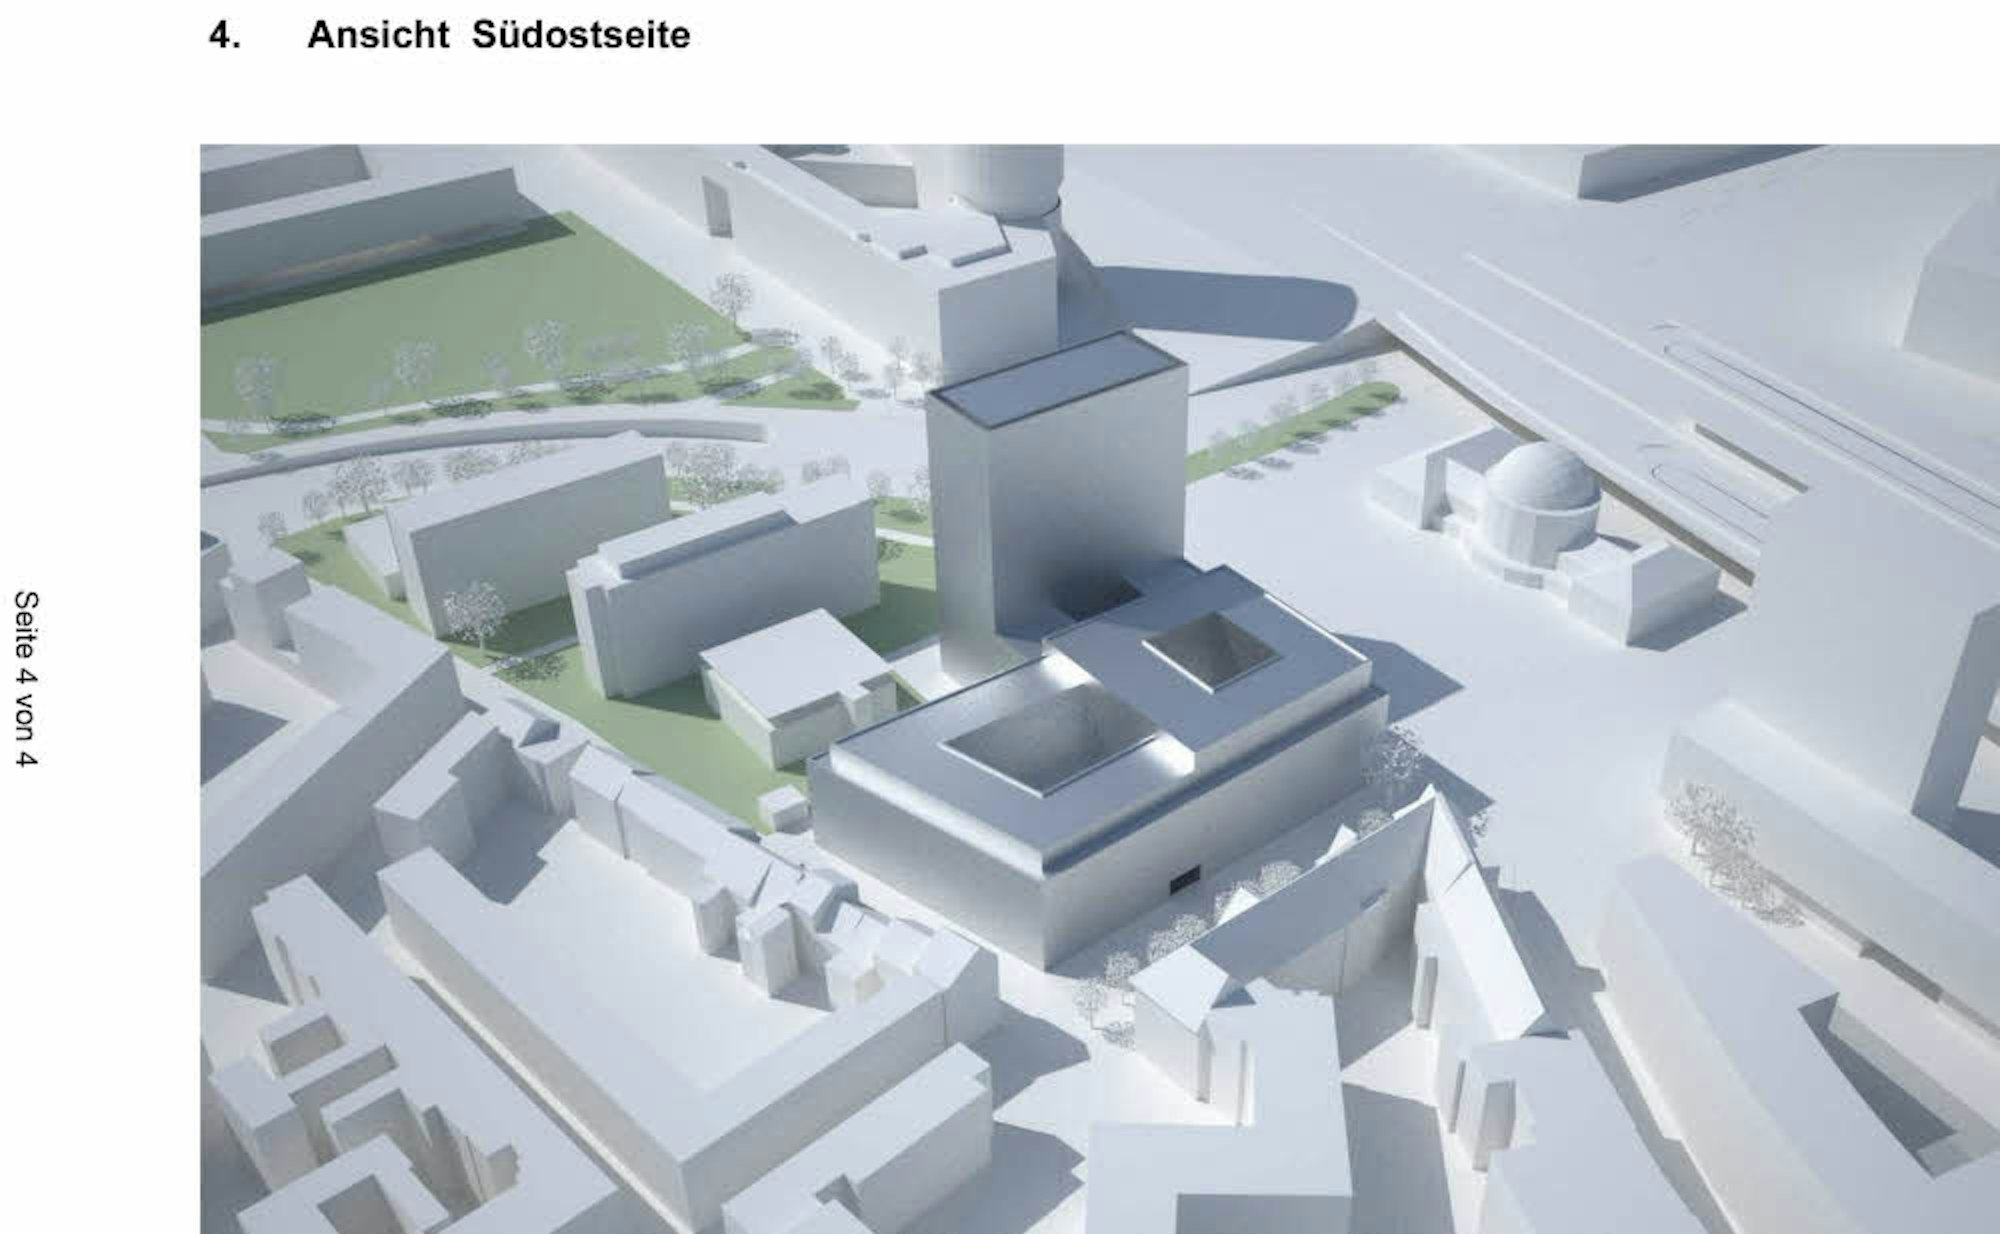 Der geplante Neubau des Landschaftsverband Rheinland, Ansicht von Südosten, im Modell.